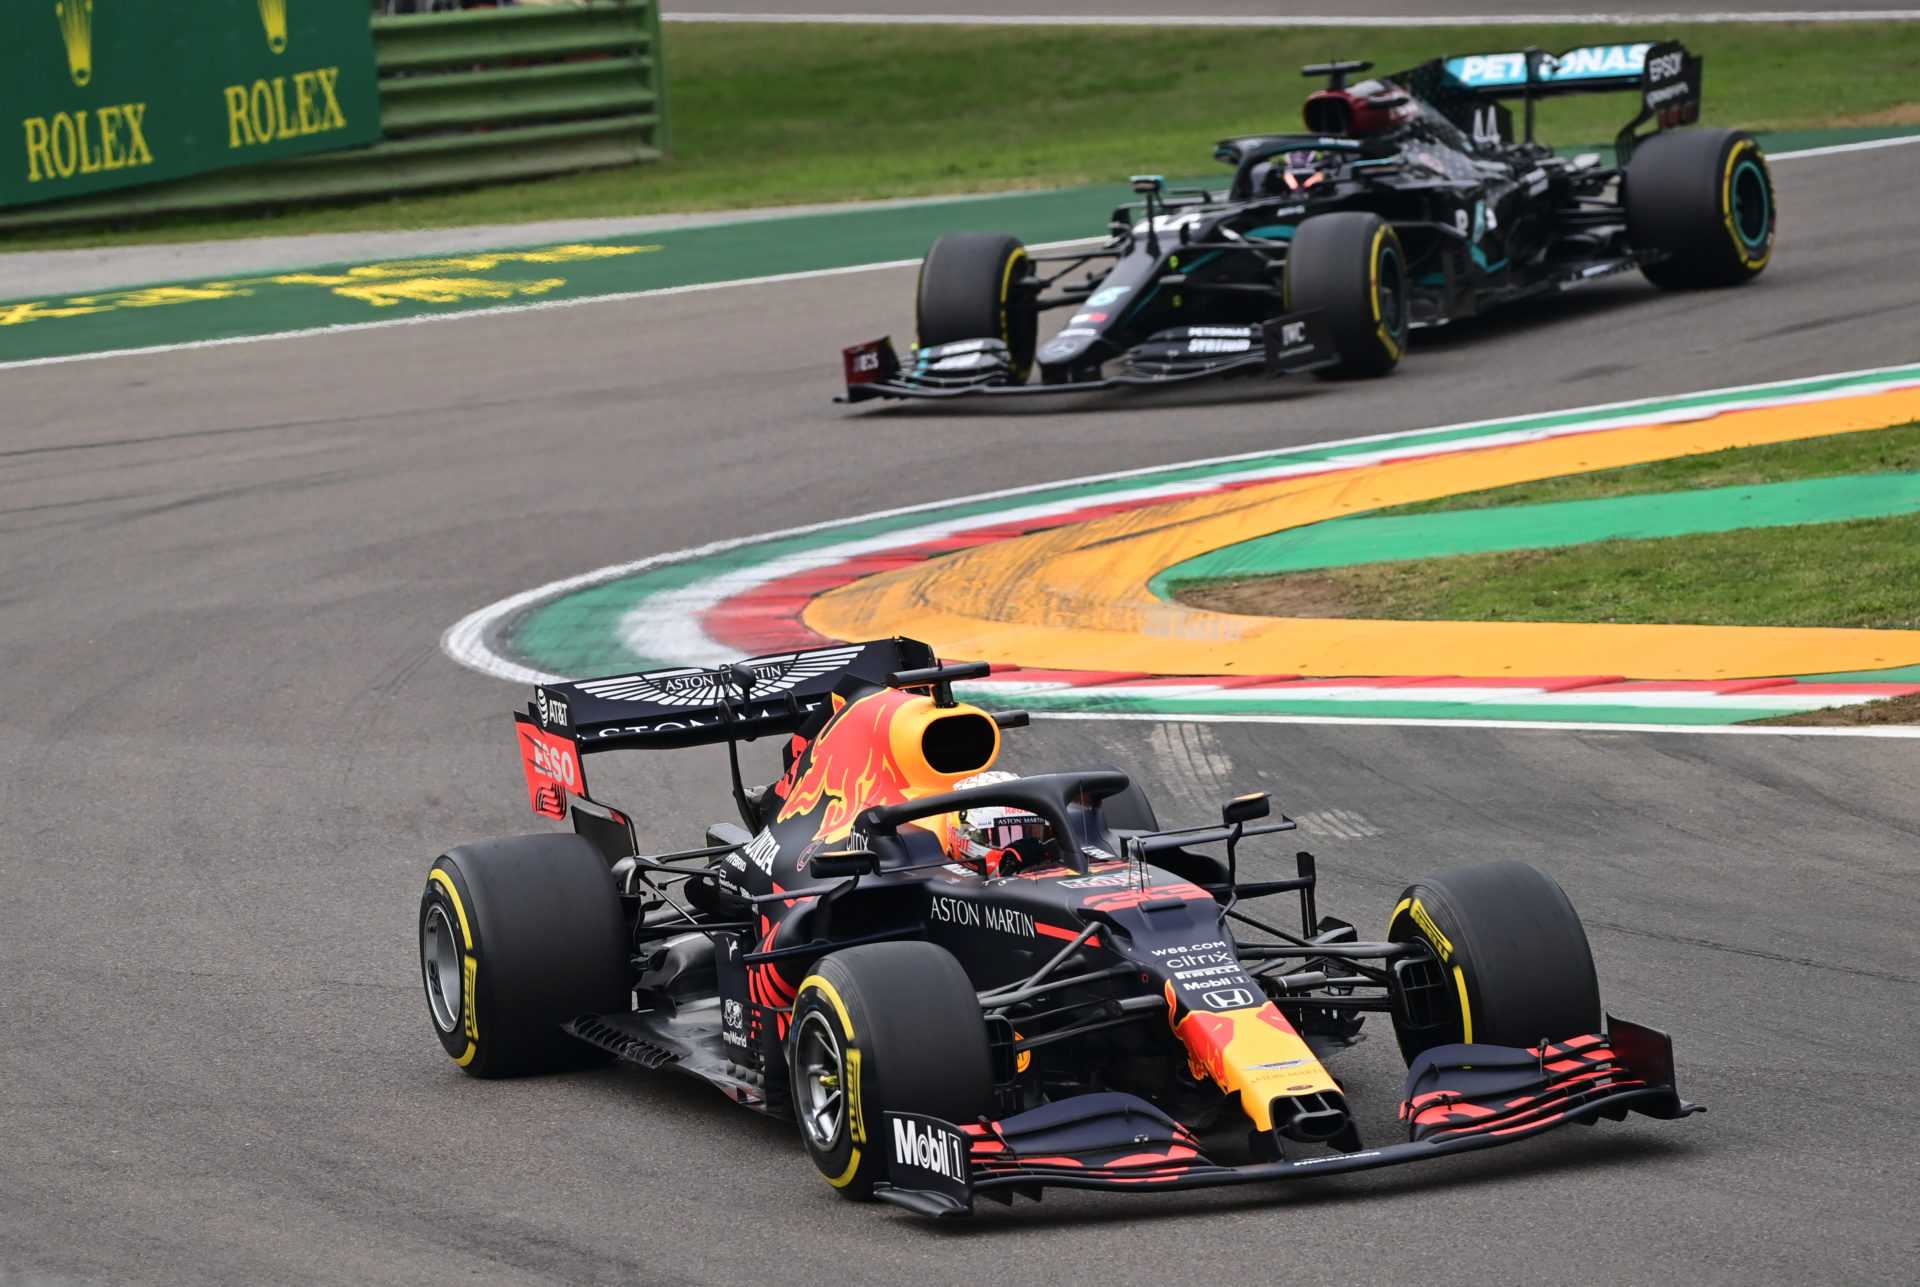 Max Verstappen et Lewis Hamilton pendant la course au Grand Prix d'Émilie-Romagne 2020